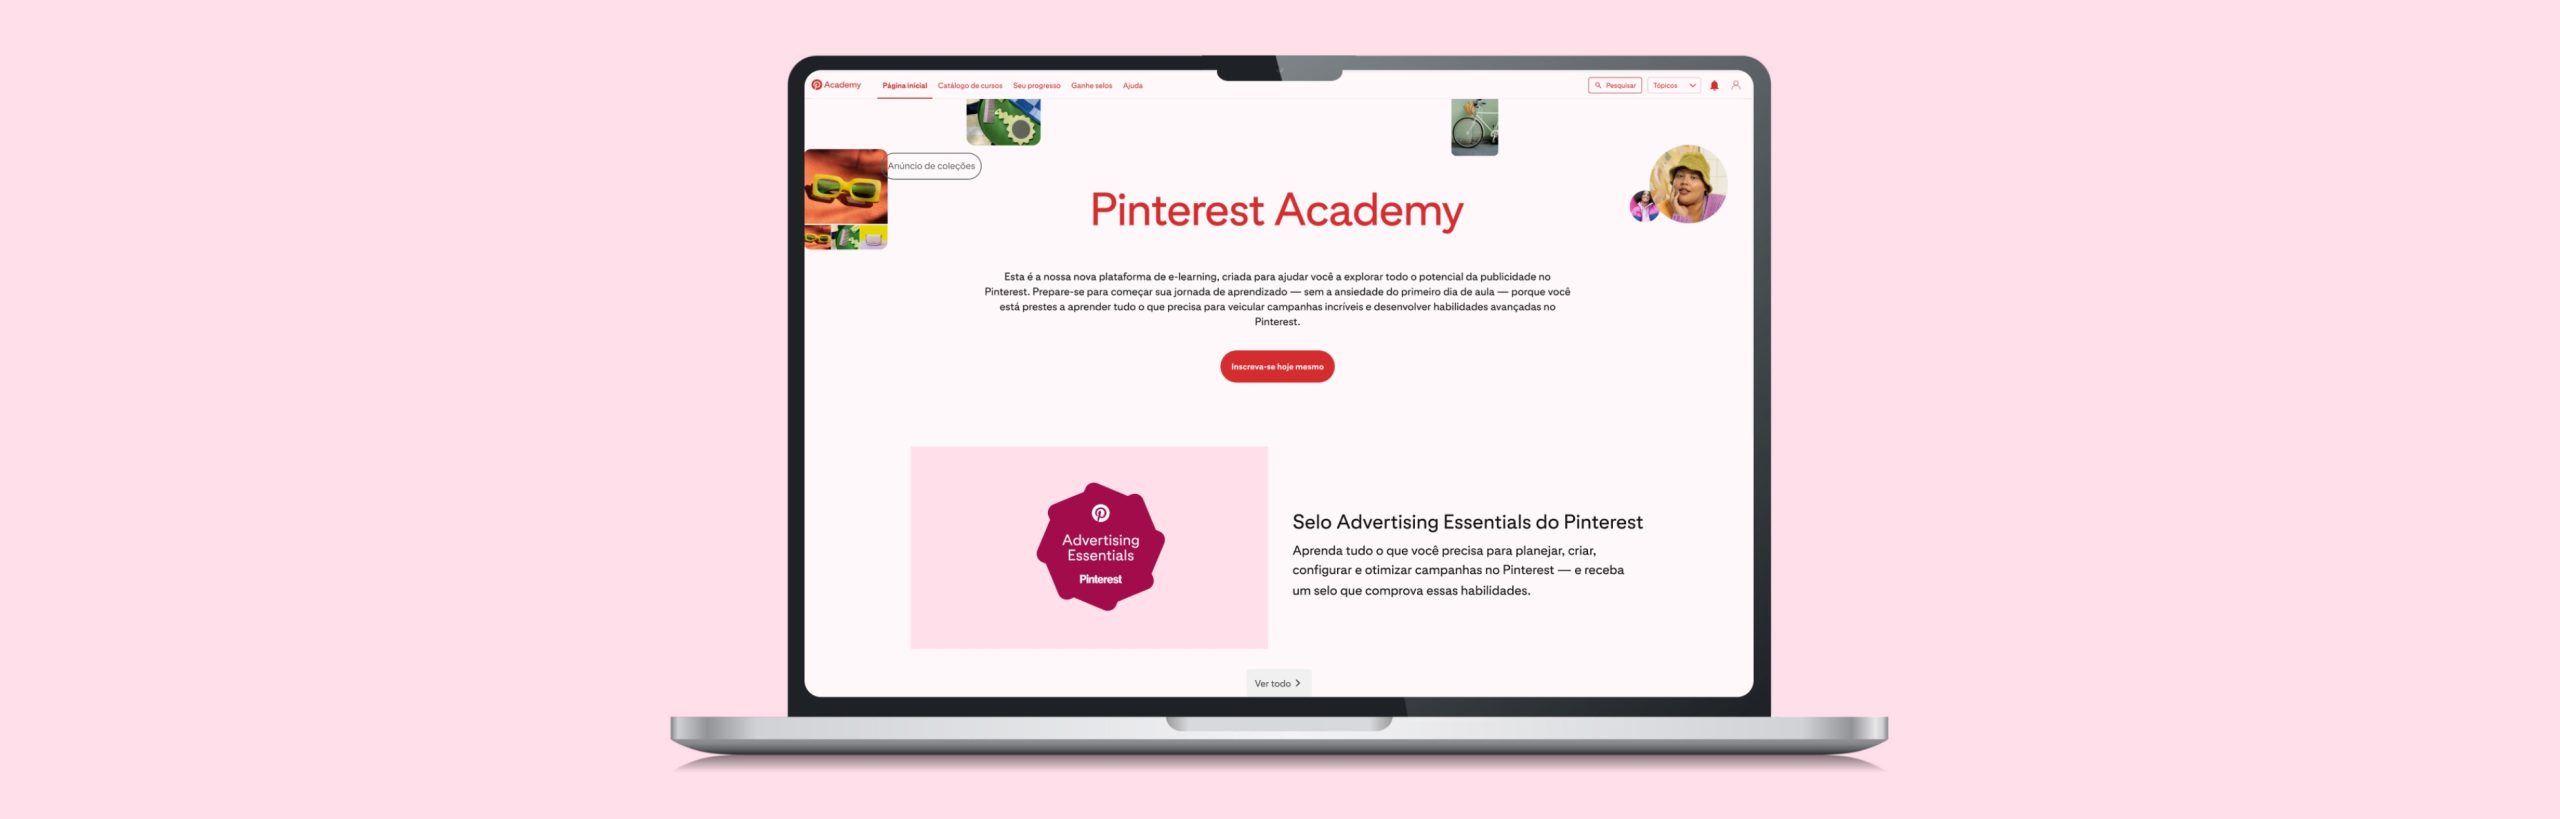 Pinterest Academy chega ao Brasil com cursos gratuitos